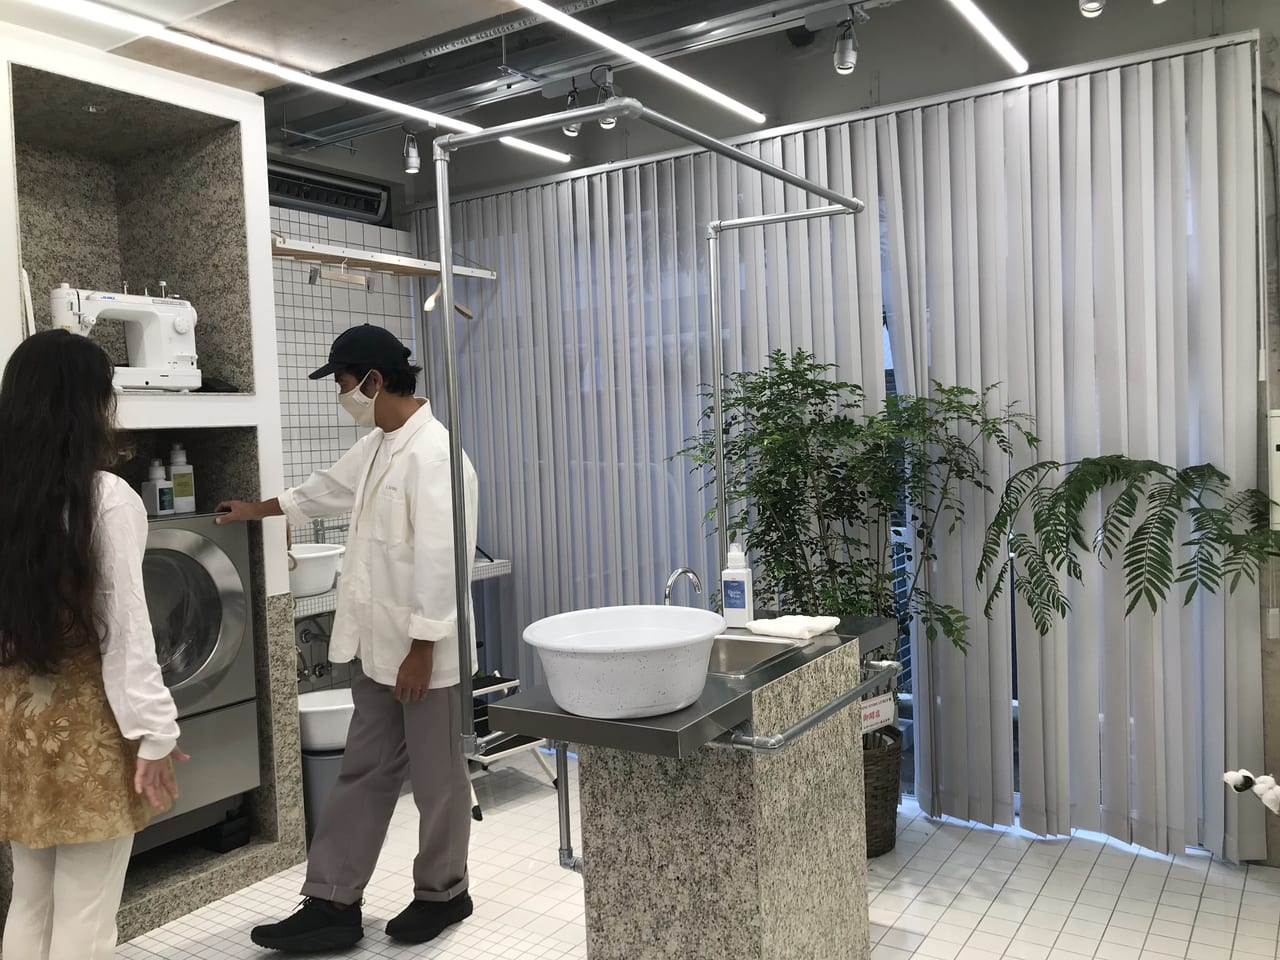 世田谷区池尻に洗濯ブラザーズの新たな発進基地「LIVRER MISHUKU」が2021年9月24日グランドオープンしました。